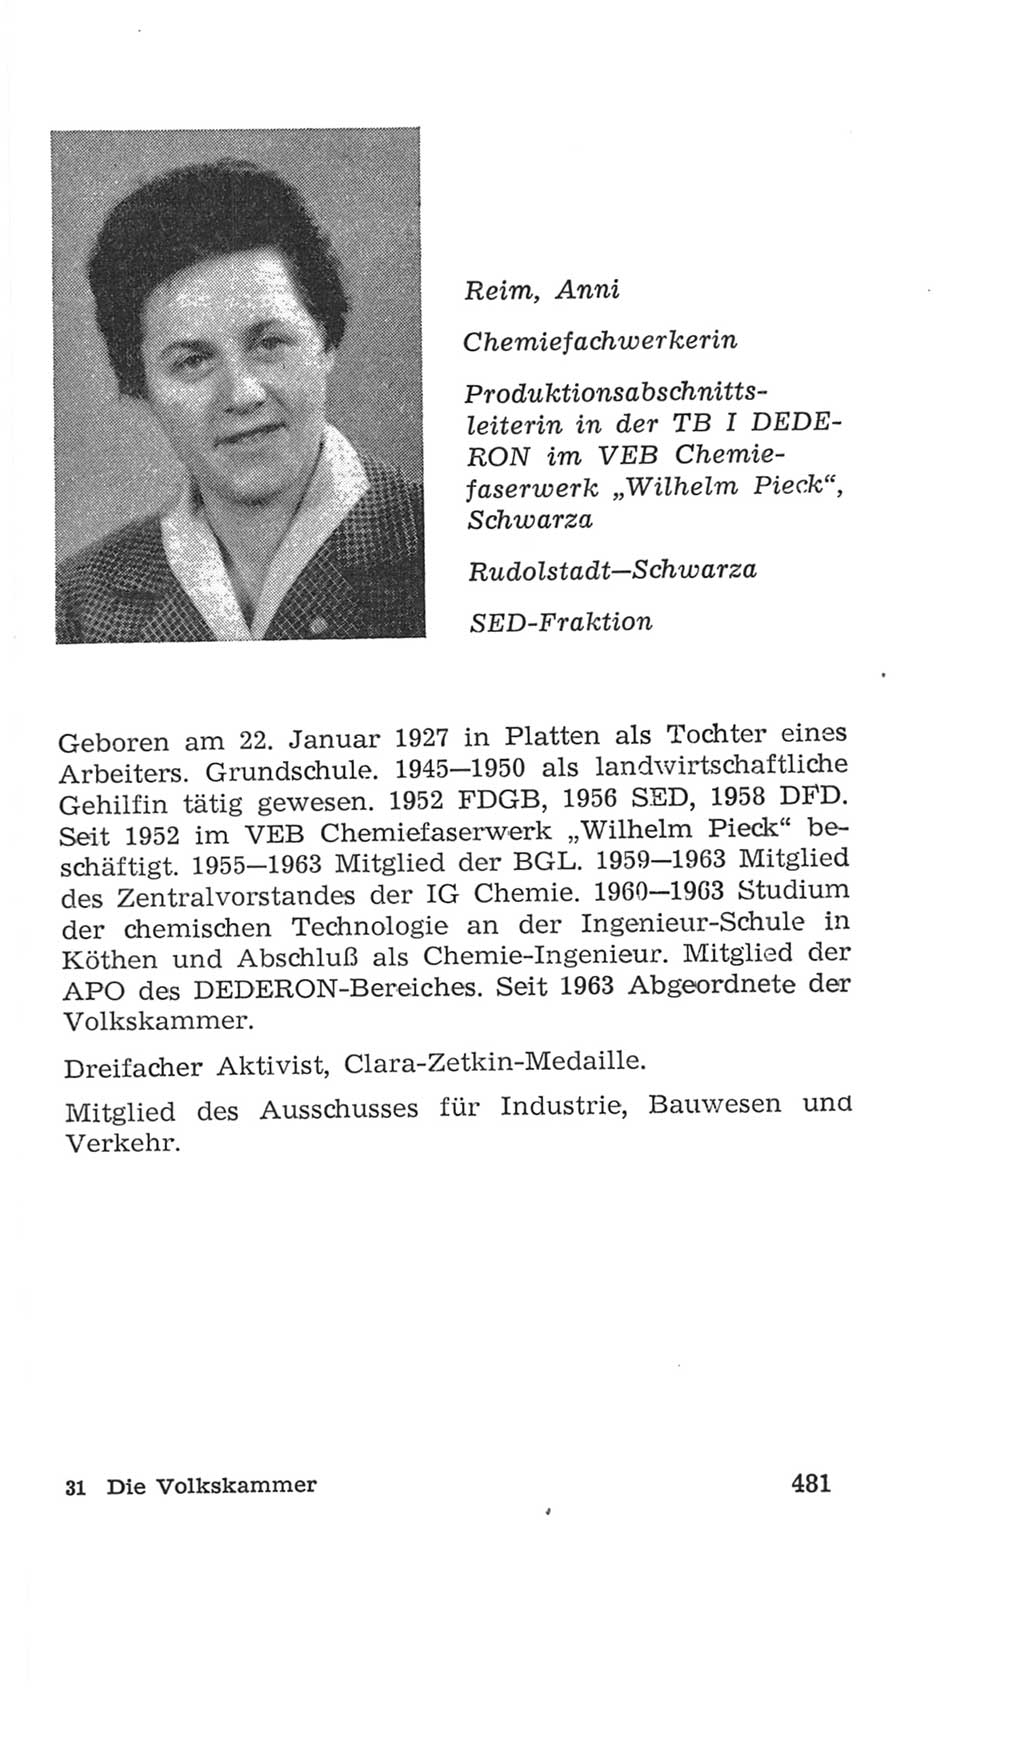 Volkskammer (VK) der Deutschen Demokratischen Republik (DDR), 4. Wahlperiode 1963-1967, Seite 481 (VK. DDR 4. WP. 1963-1967, S. 481)